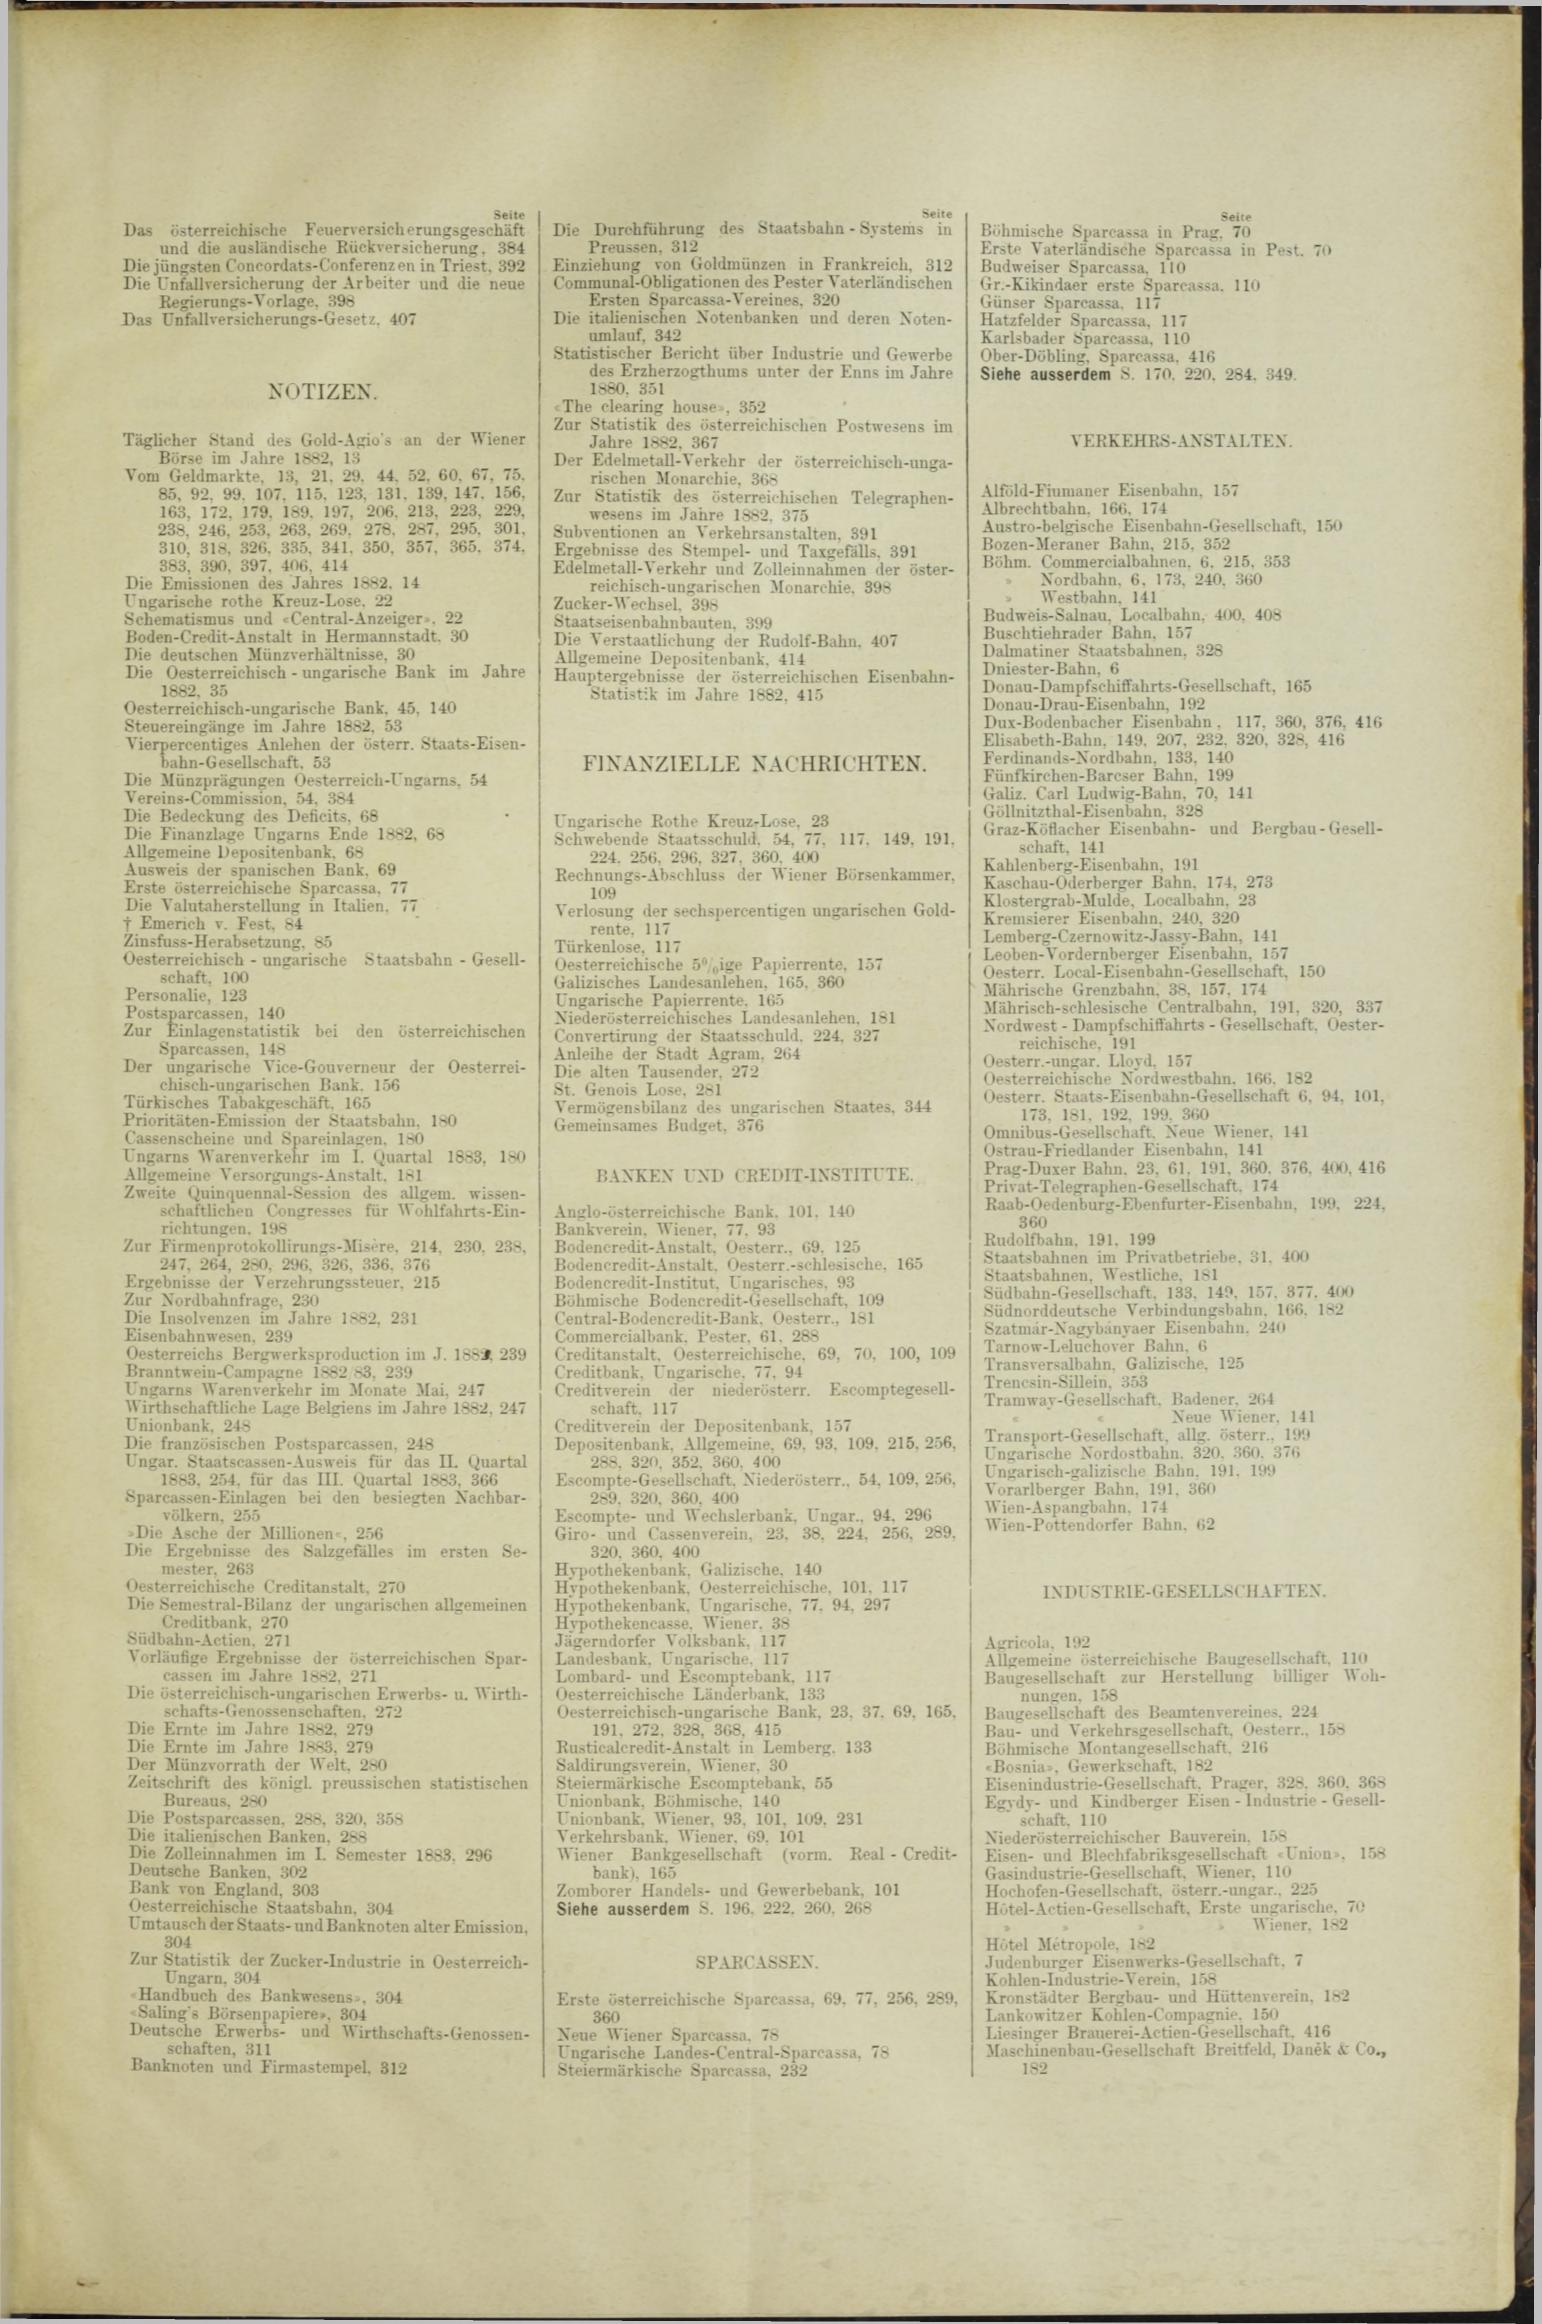 Der Tresor 22.02.1883 - Seite 11